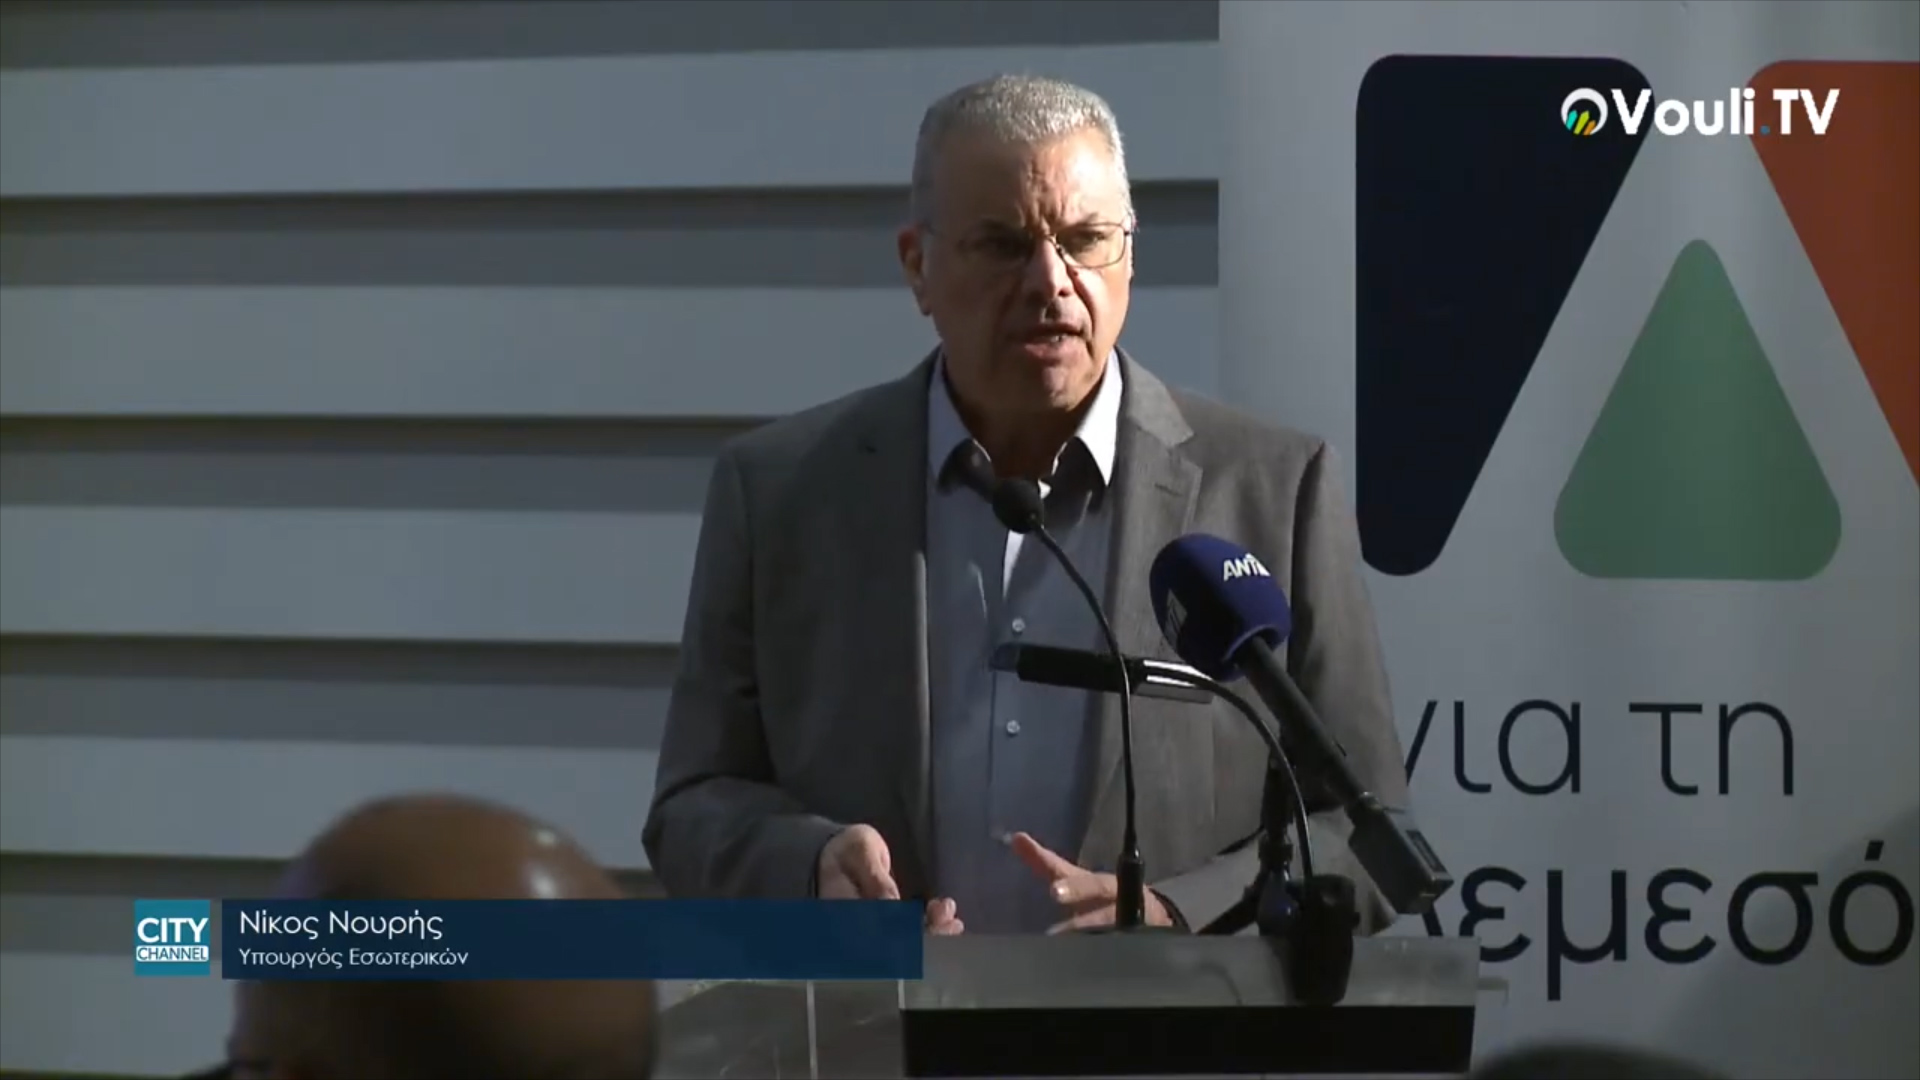 Νίκος Νουρής, Υπουργός Εσωτερικών - Ανοιχτή Συζήτηση για τη Μεταρρύθμιση της Τοπικής Αυτοδιοίκησης 26/11/2021